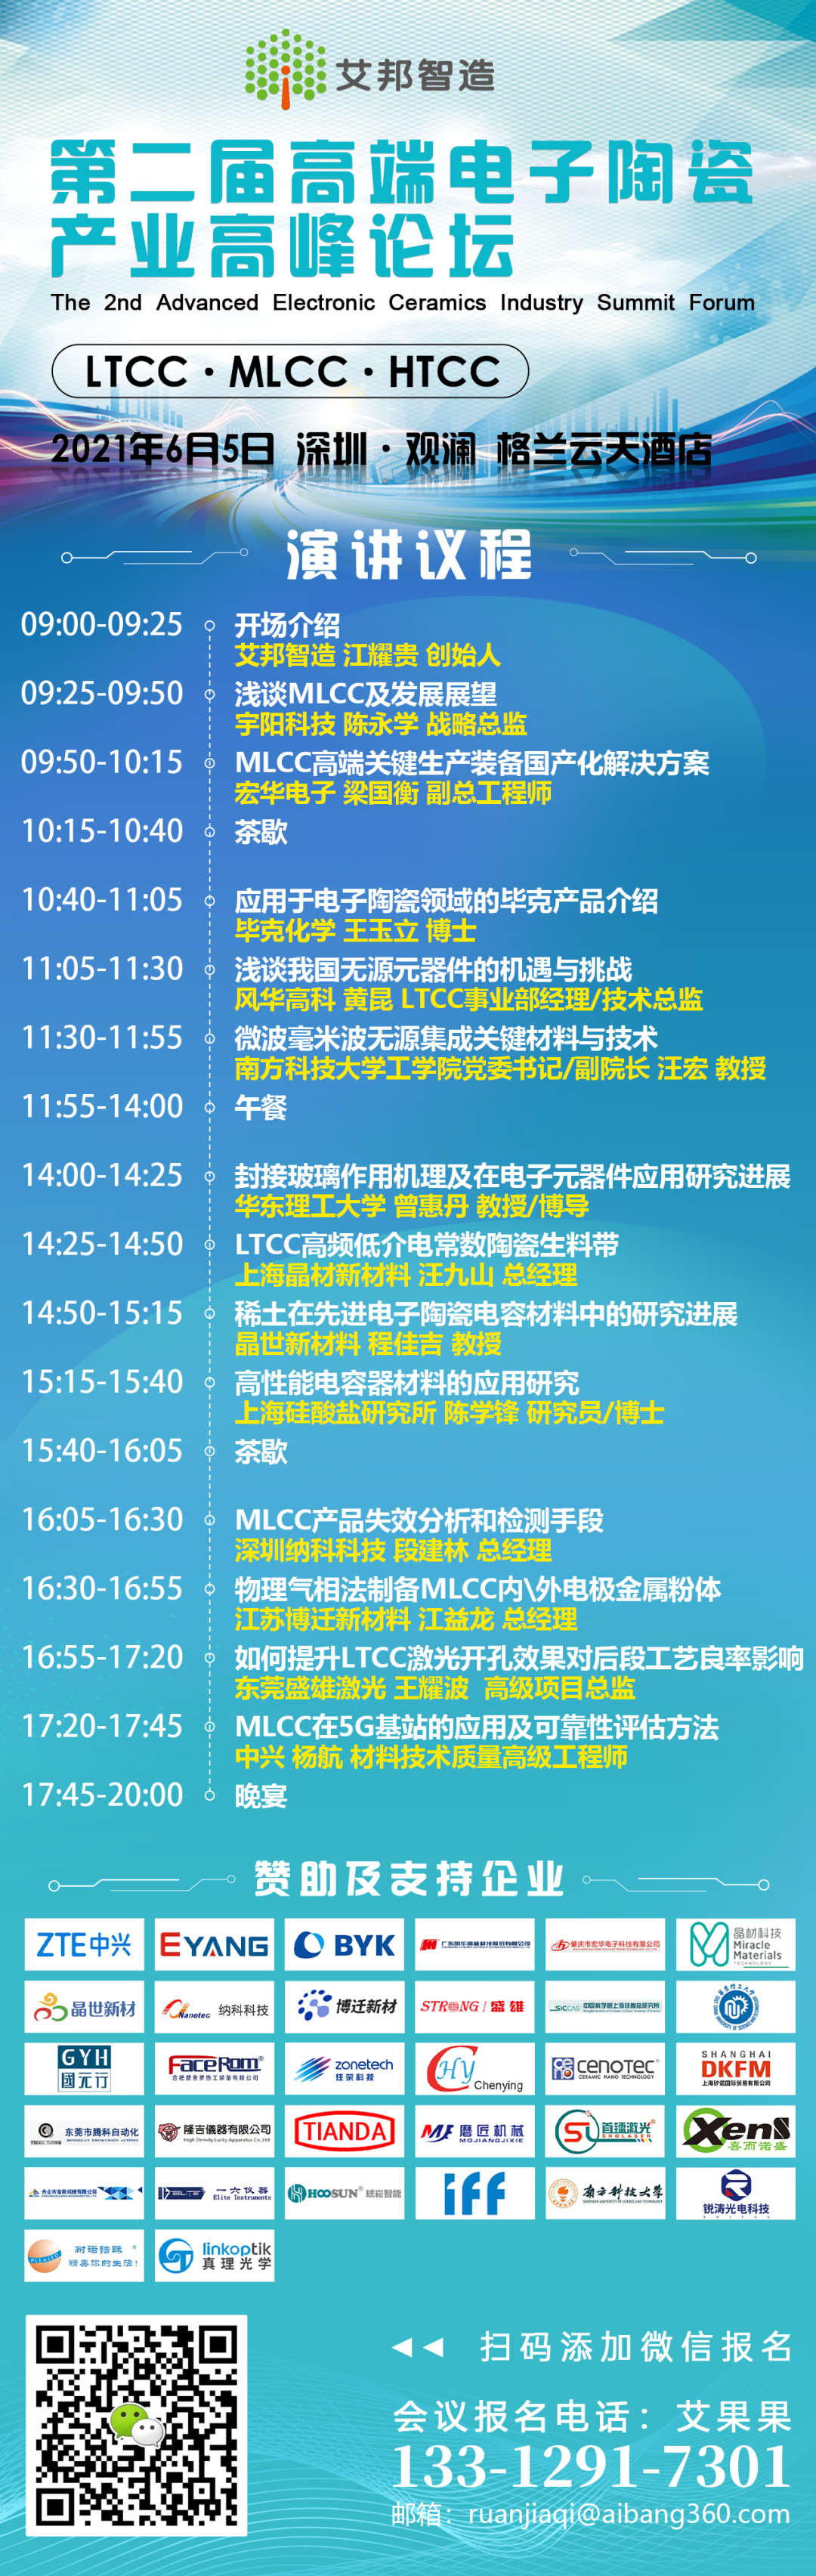 南方科技大学汪宏教授出席第二届MLCC、LTCC产业高峰论坛并作微波毫米波无源集成关键材料与技术演讲